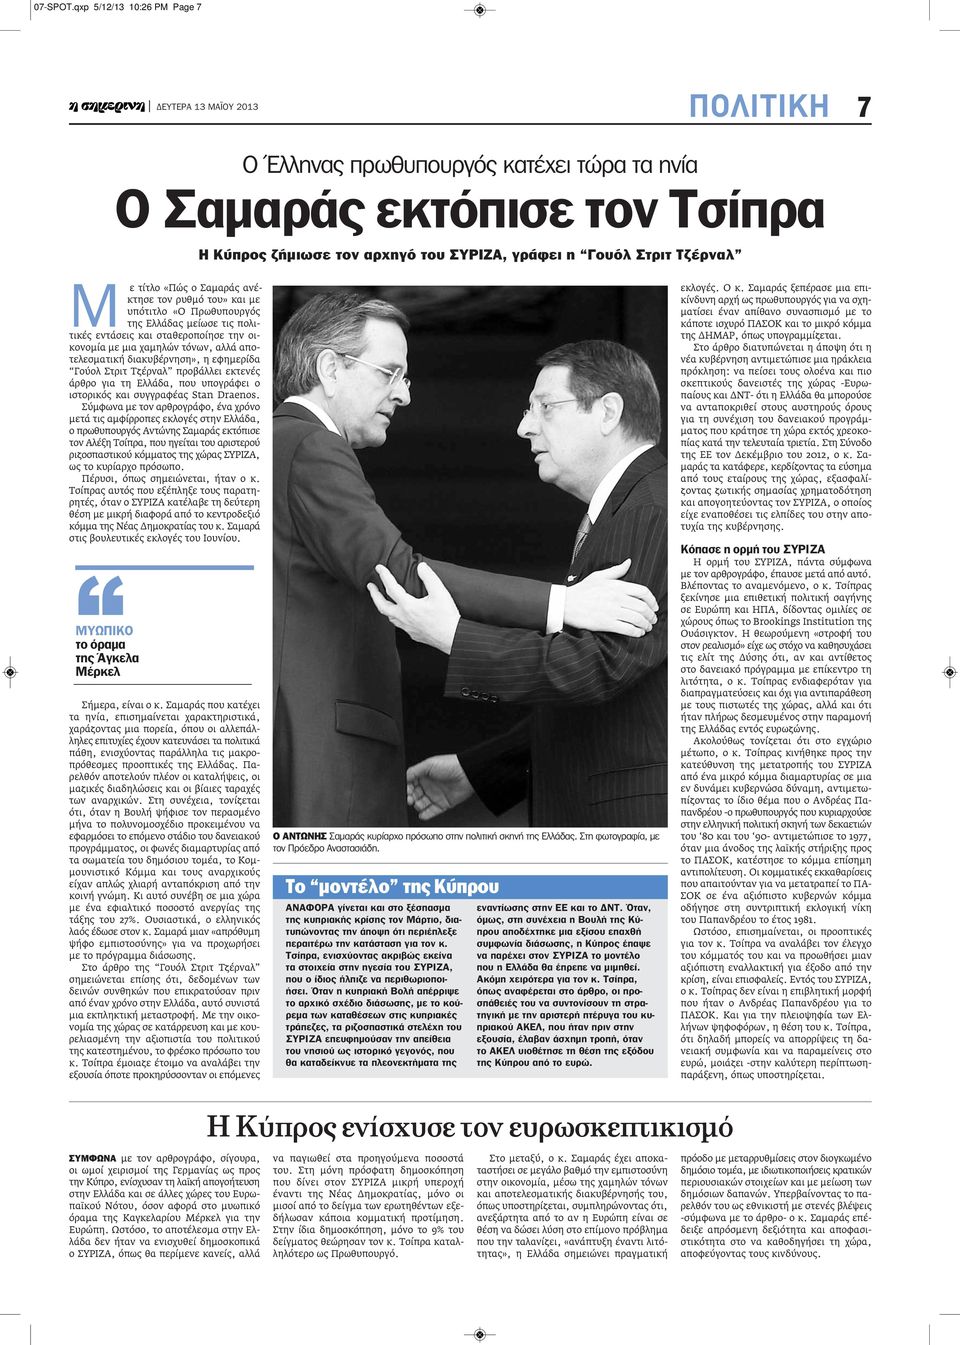 Ελλάδας μείωσε τις πολιτικές εντάσεις και σταθεροποίησε την οικονομία με μια χαμηλών τόνων, αλλά αποτελεσματική διακυβέρνηση», η εφημερίδα Γούολ Στριτ Τζέρναλ προβάλλει εκτενές άρθρο για τη Ελλάδα,